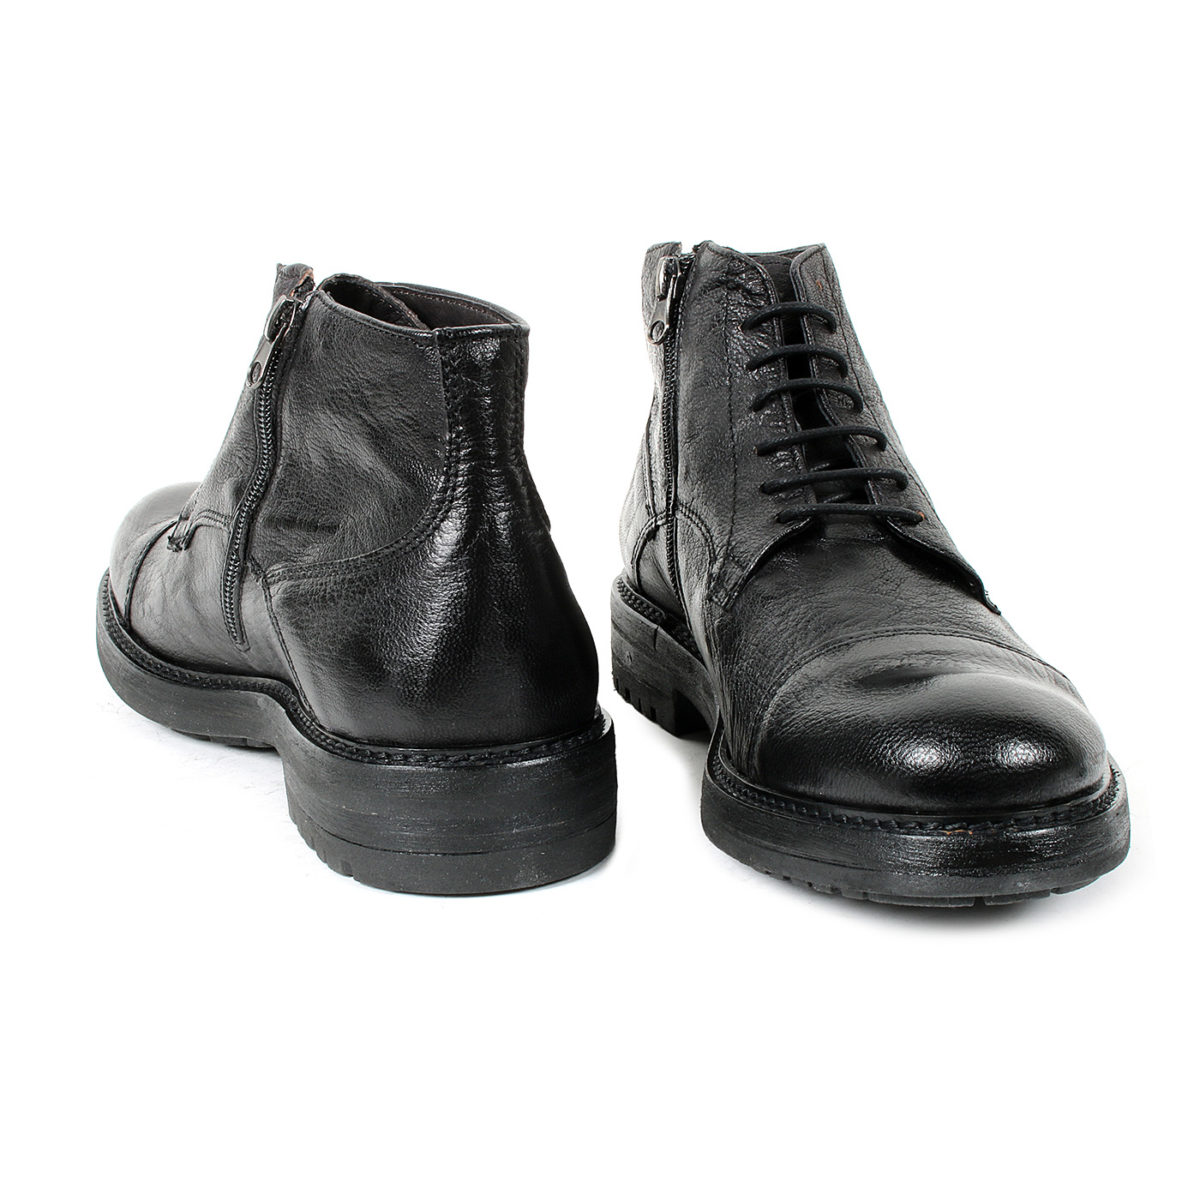 DADA – Scarpe alte uomo in vera pelle stringate con zip laterale – Nero -  MitShopping - Abbigliamento e scarpe